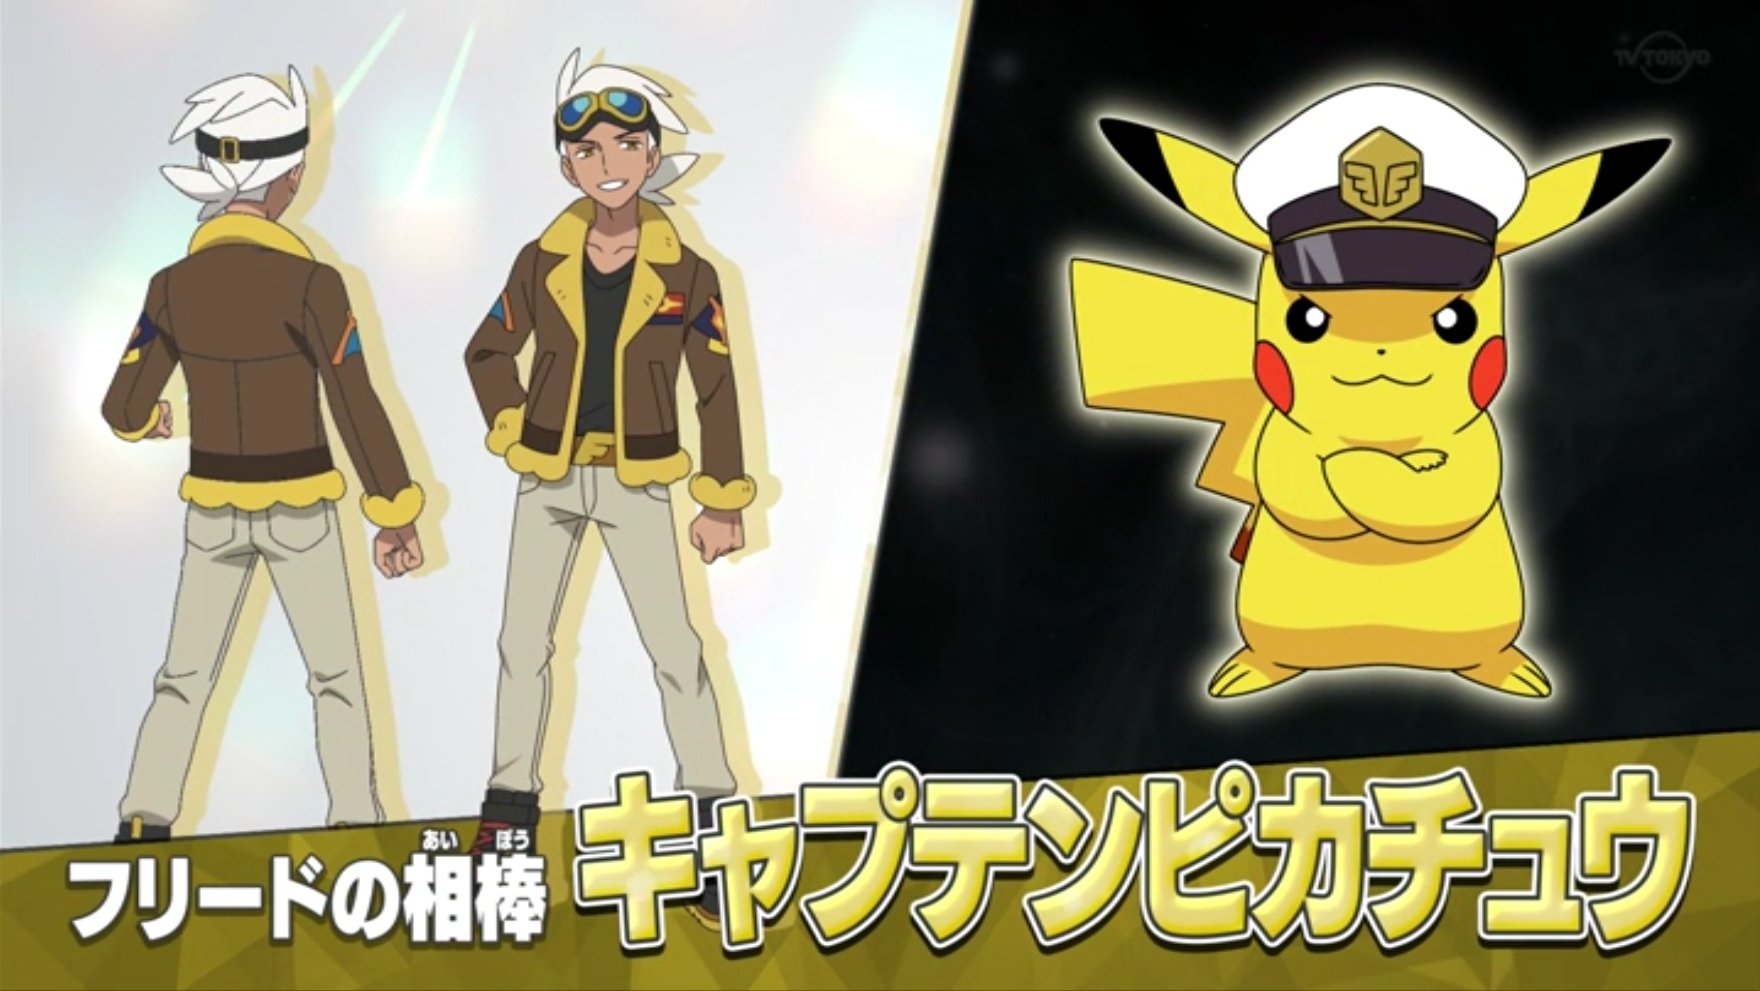 #Pokémon-Anime: Ash ist Geschichte – aber Pikachu feiert Rückkehr mit diesem neuen Partner